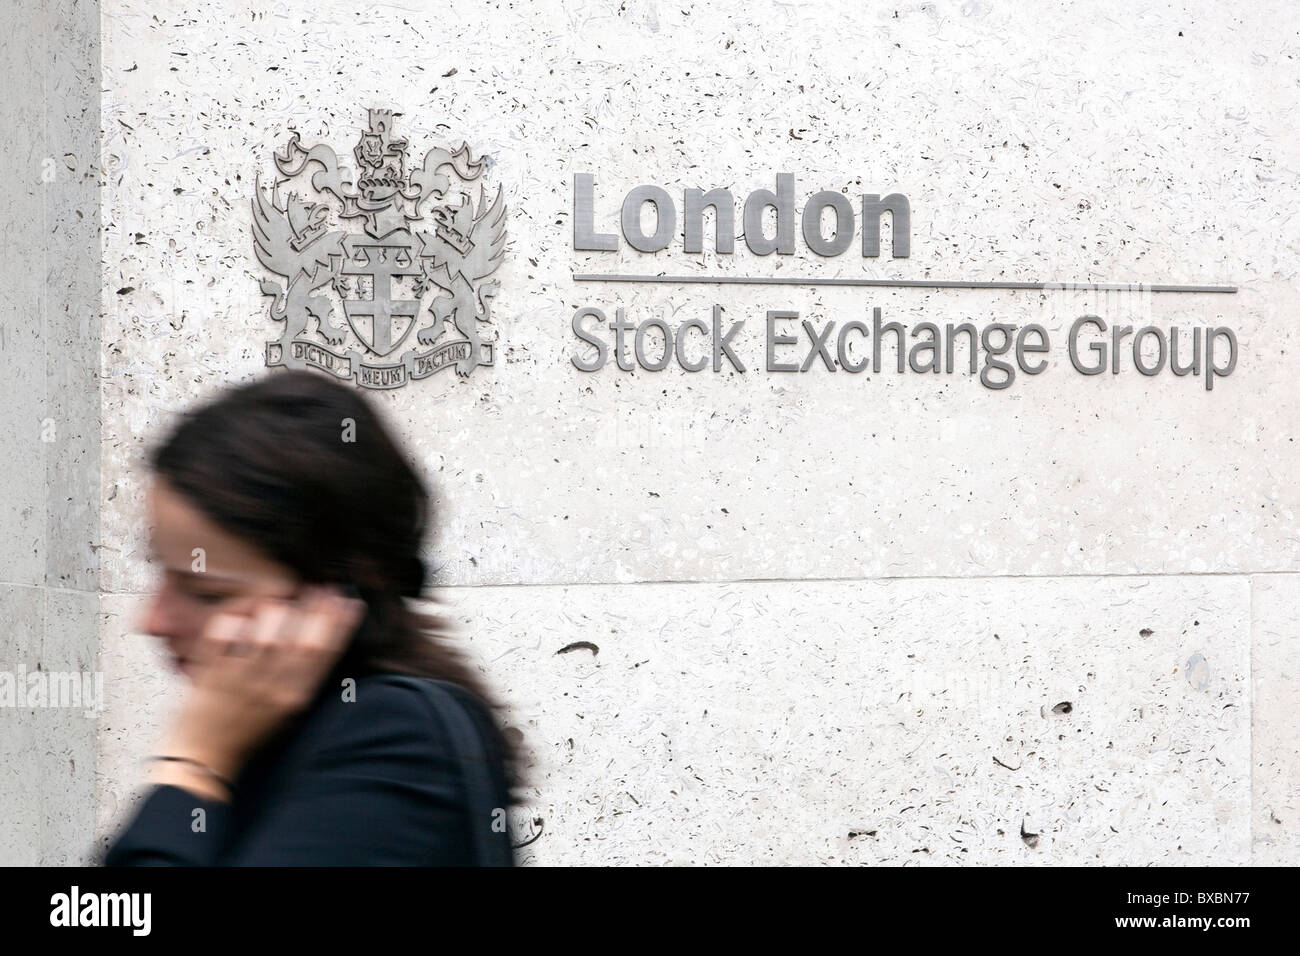 Femme en face du logo de la London Stock Exchange Group, à Londres, Angleterre, Royaume-Uni, Europe Banque D'Images